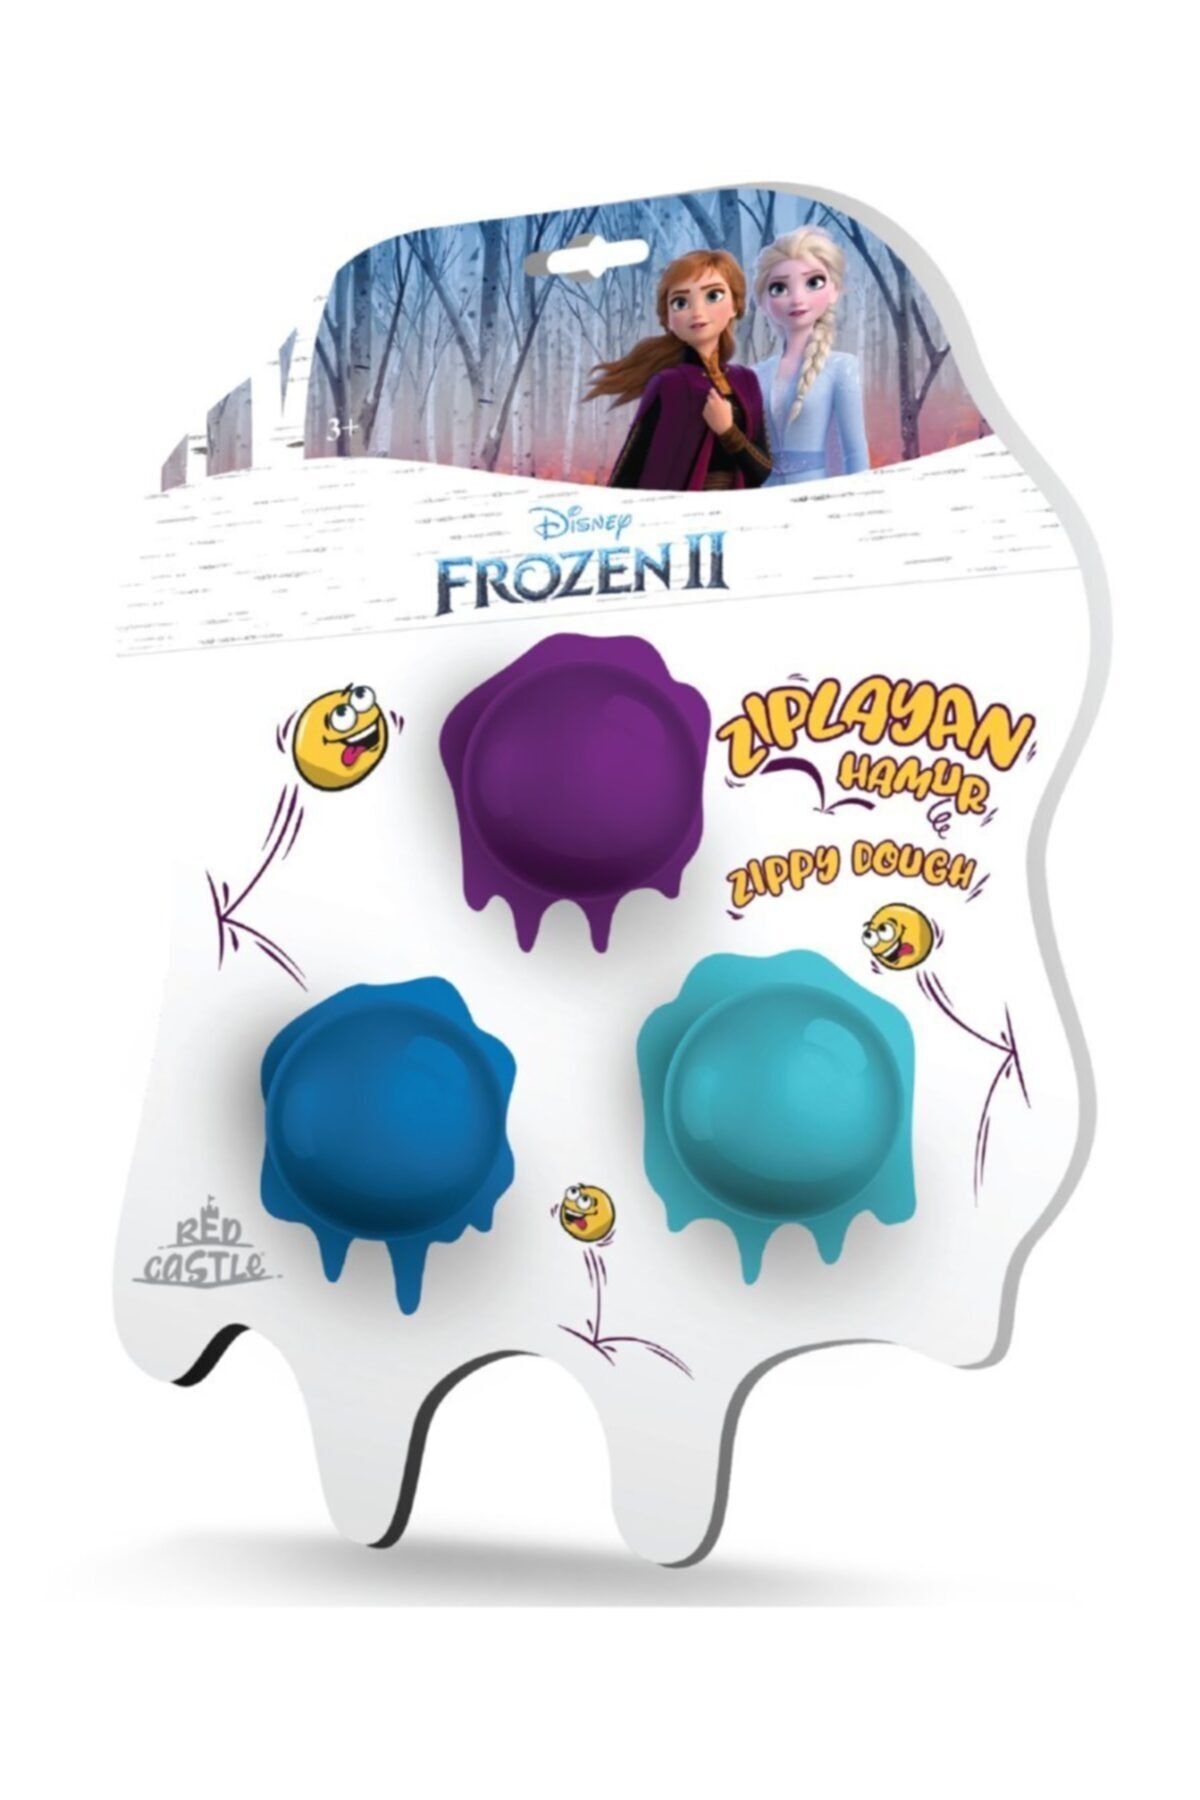 Red Castle Zıplayan Hamur & Slime Disney Frozen Iı 3'lü